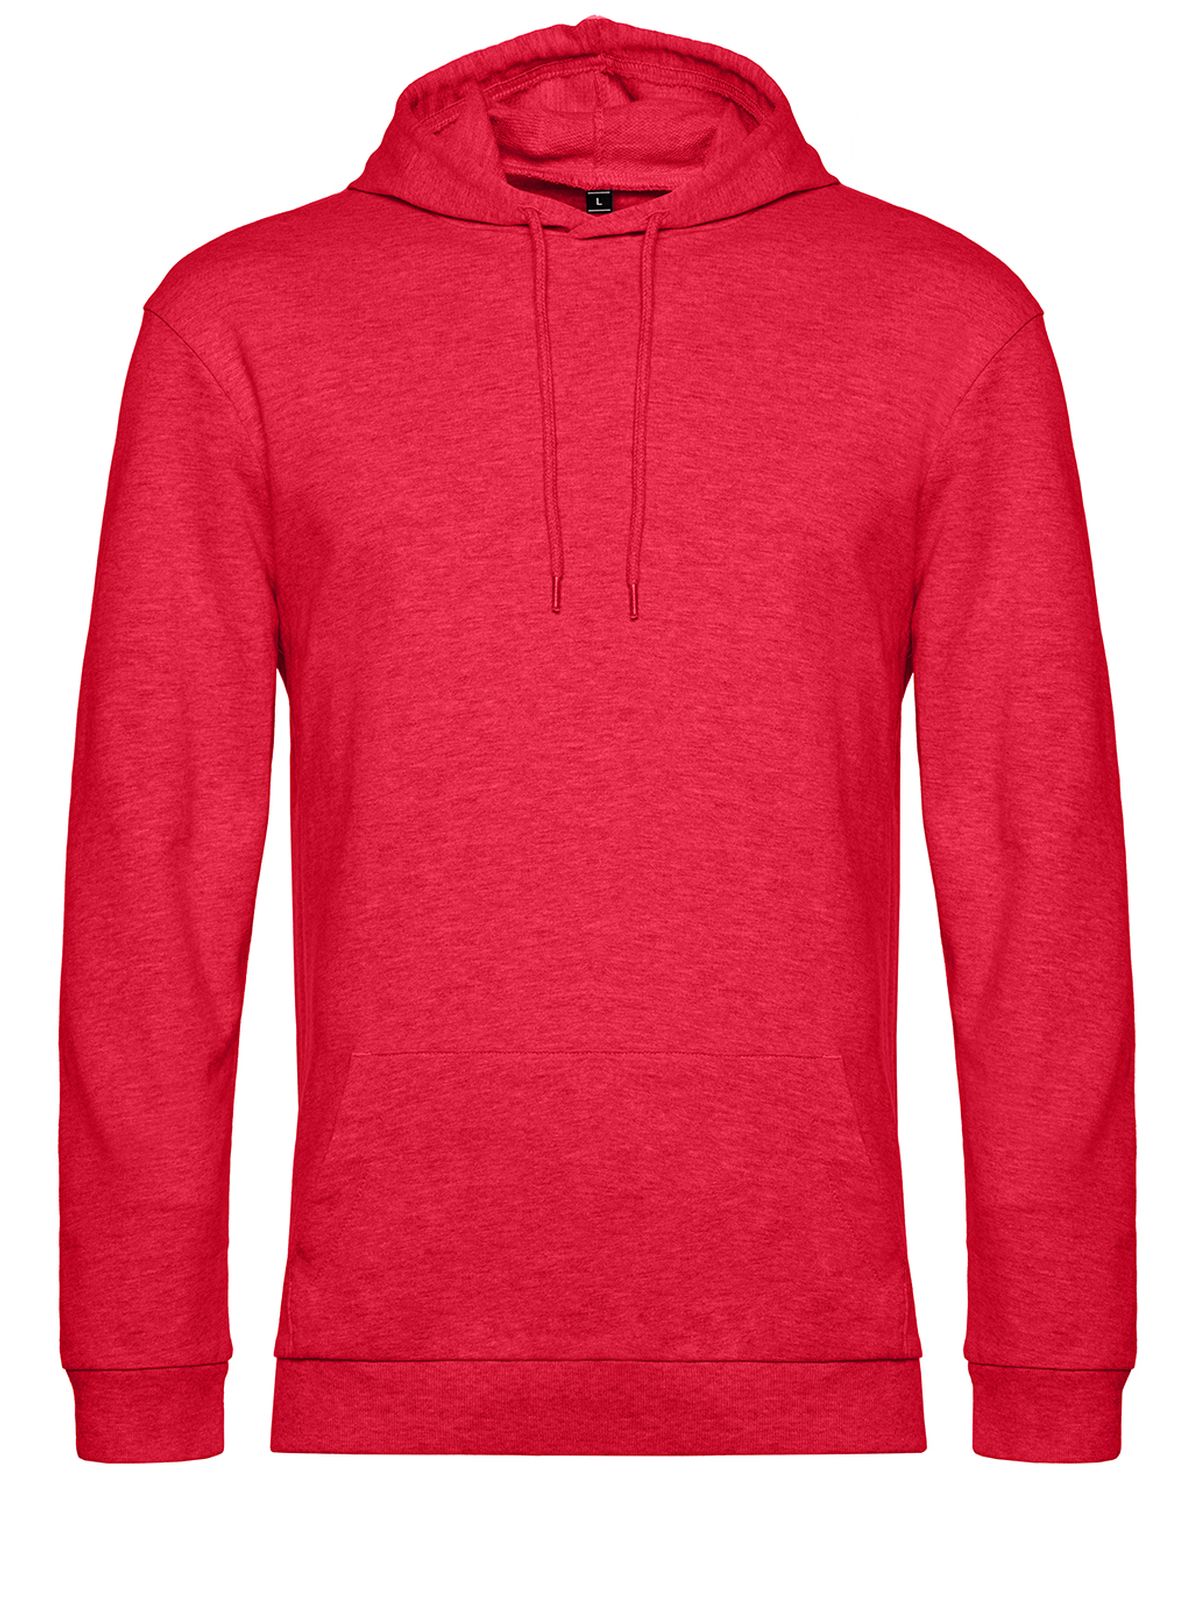 hoodie-heather-red.webp